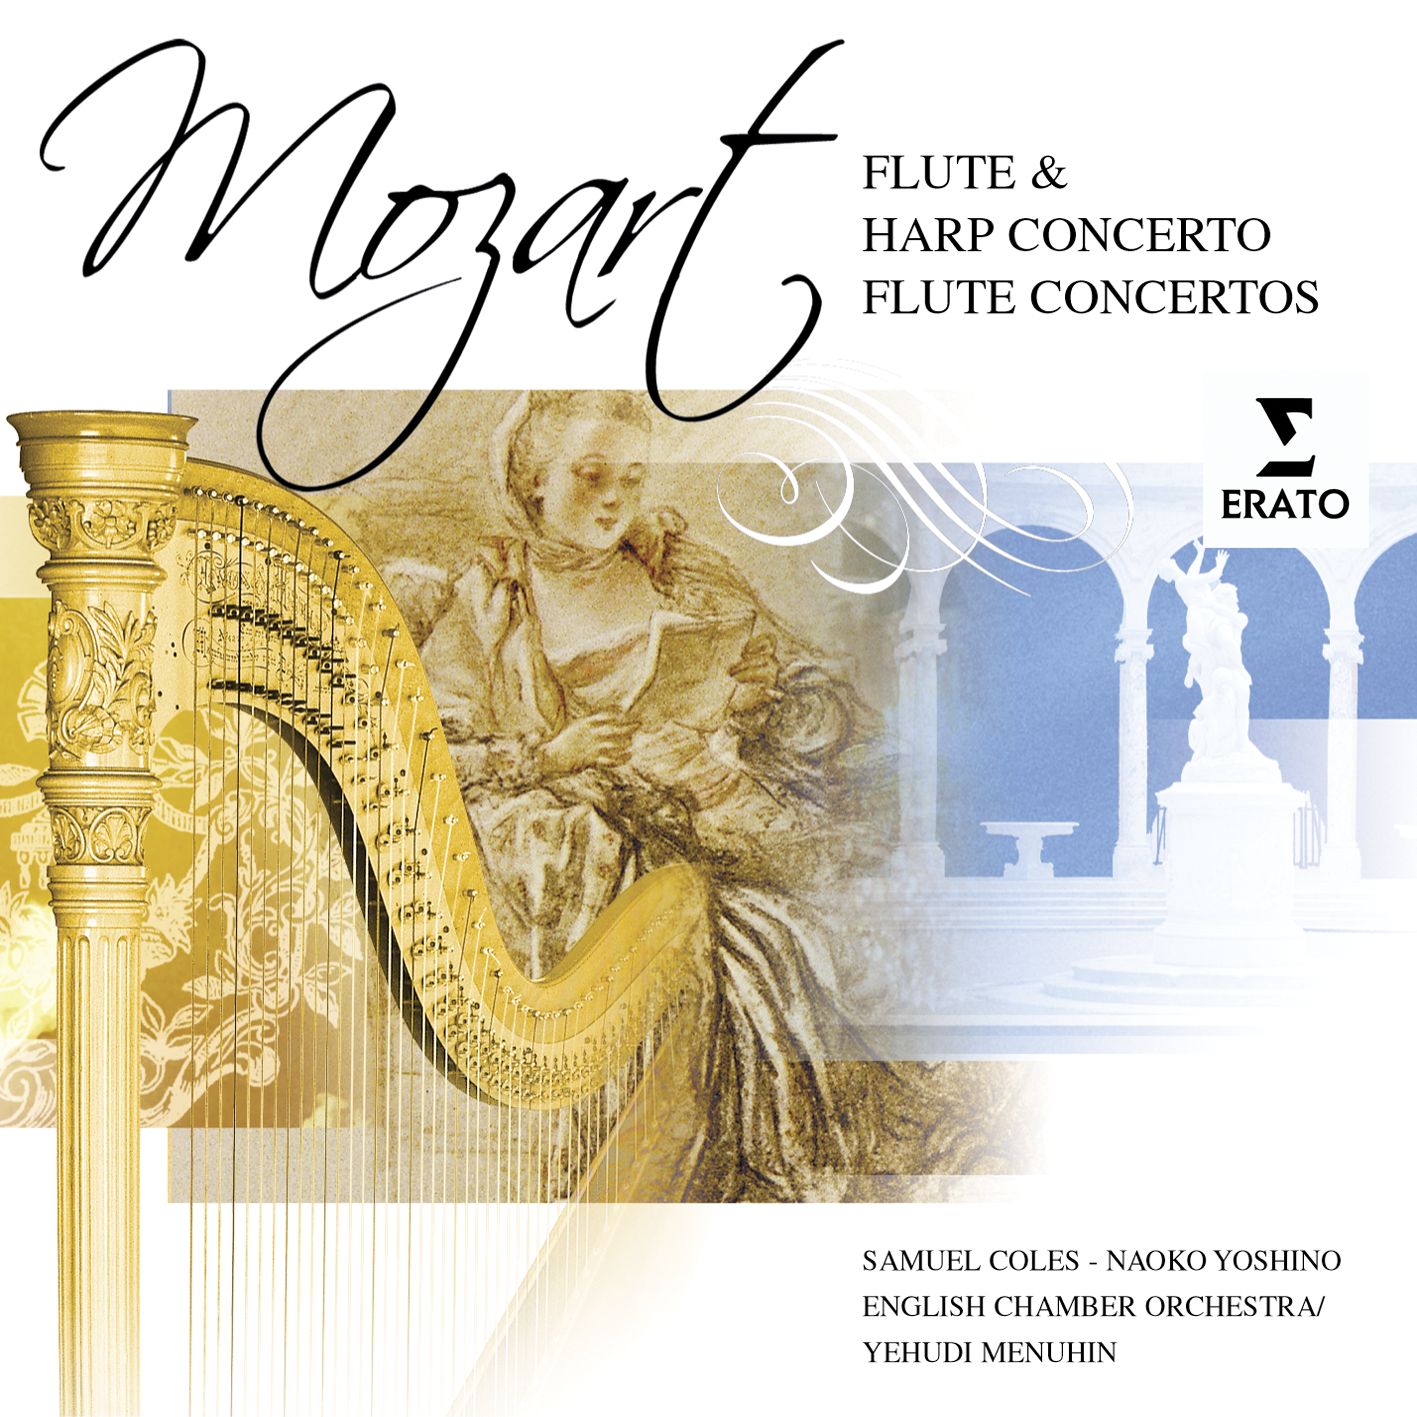 Flute & Harp Concerto in C Major, K.299: I. Allegro